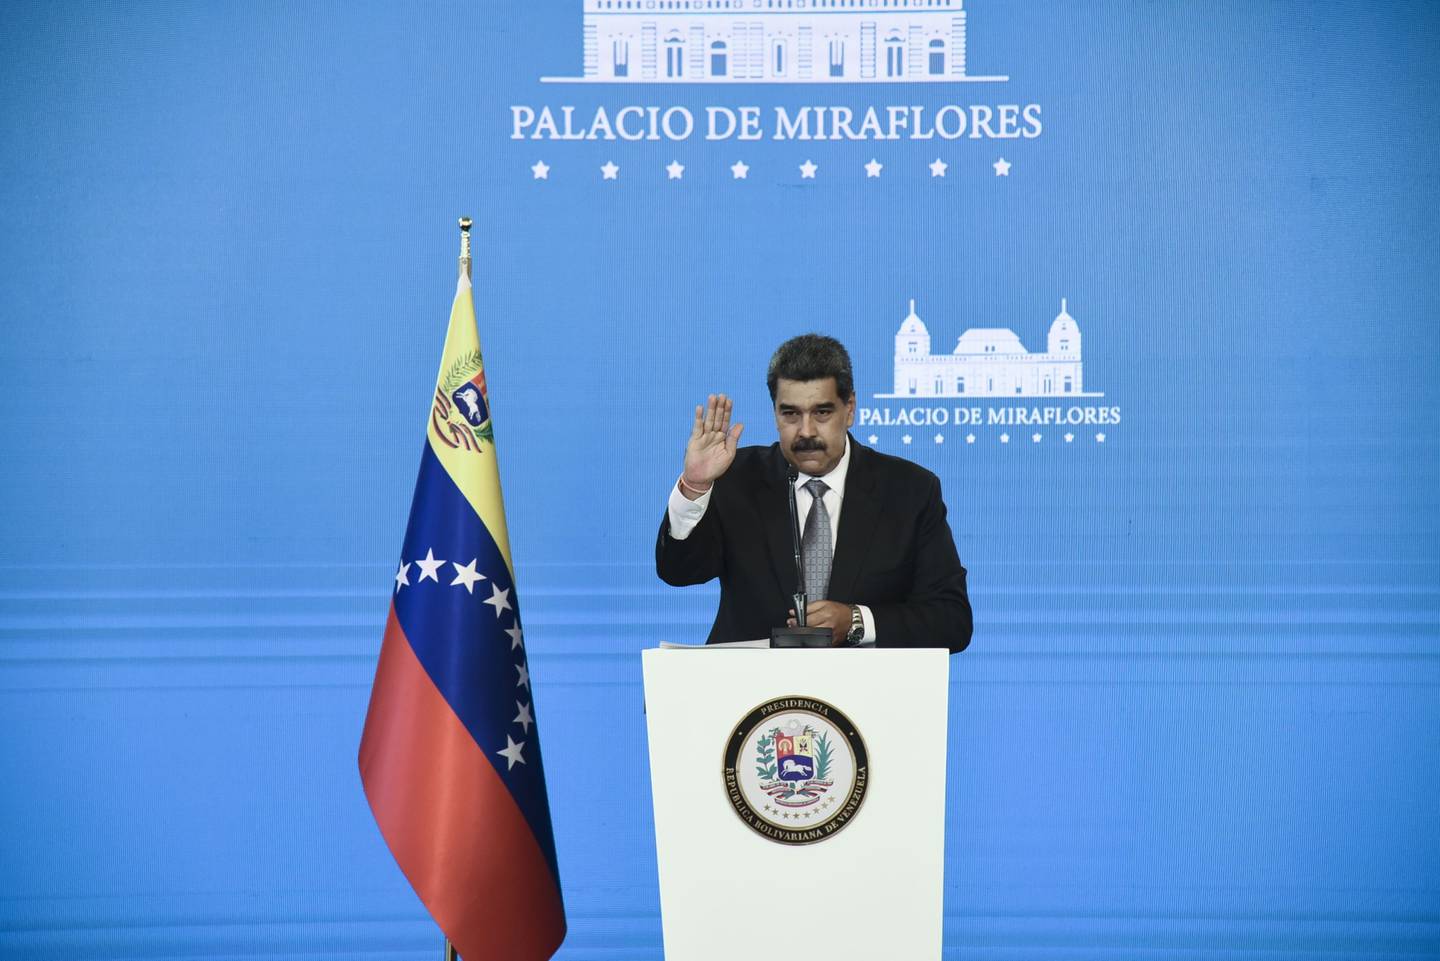 Nicolás Maduro, presidente de Venezuela, saluda después de una conferencia de prensa en el Palacio de Miraflores en Caracas, Venezuela, el miércoles 17 de febrero de 2021. dfd